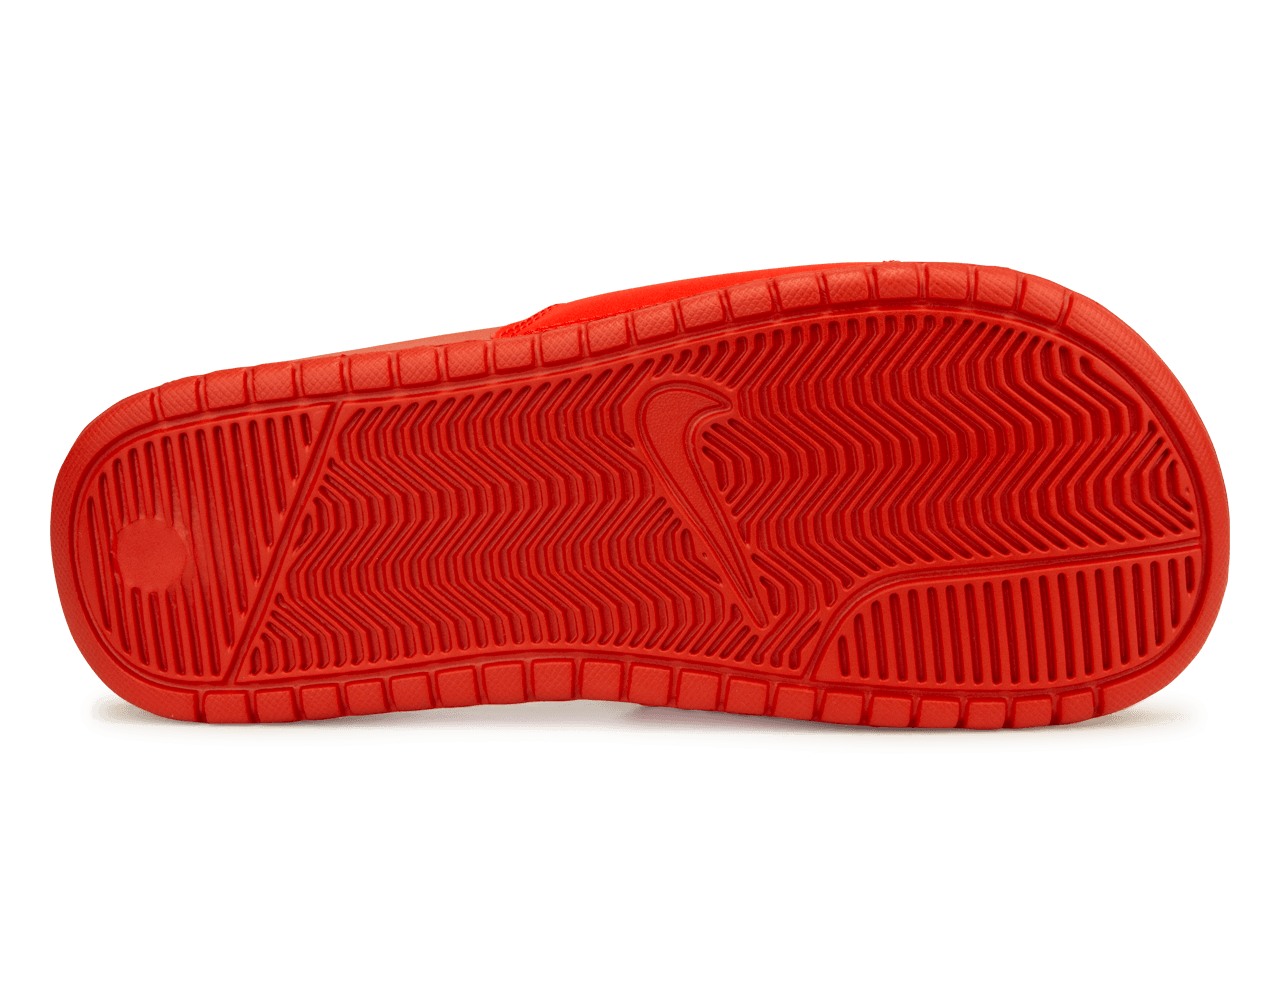 Nike Men's Benassi Stussy Sandal Red/White Sole